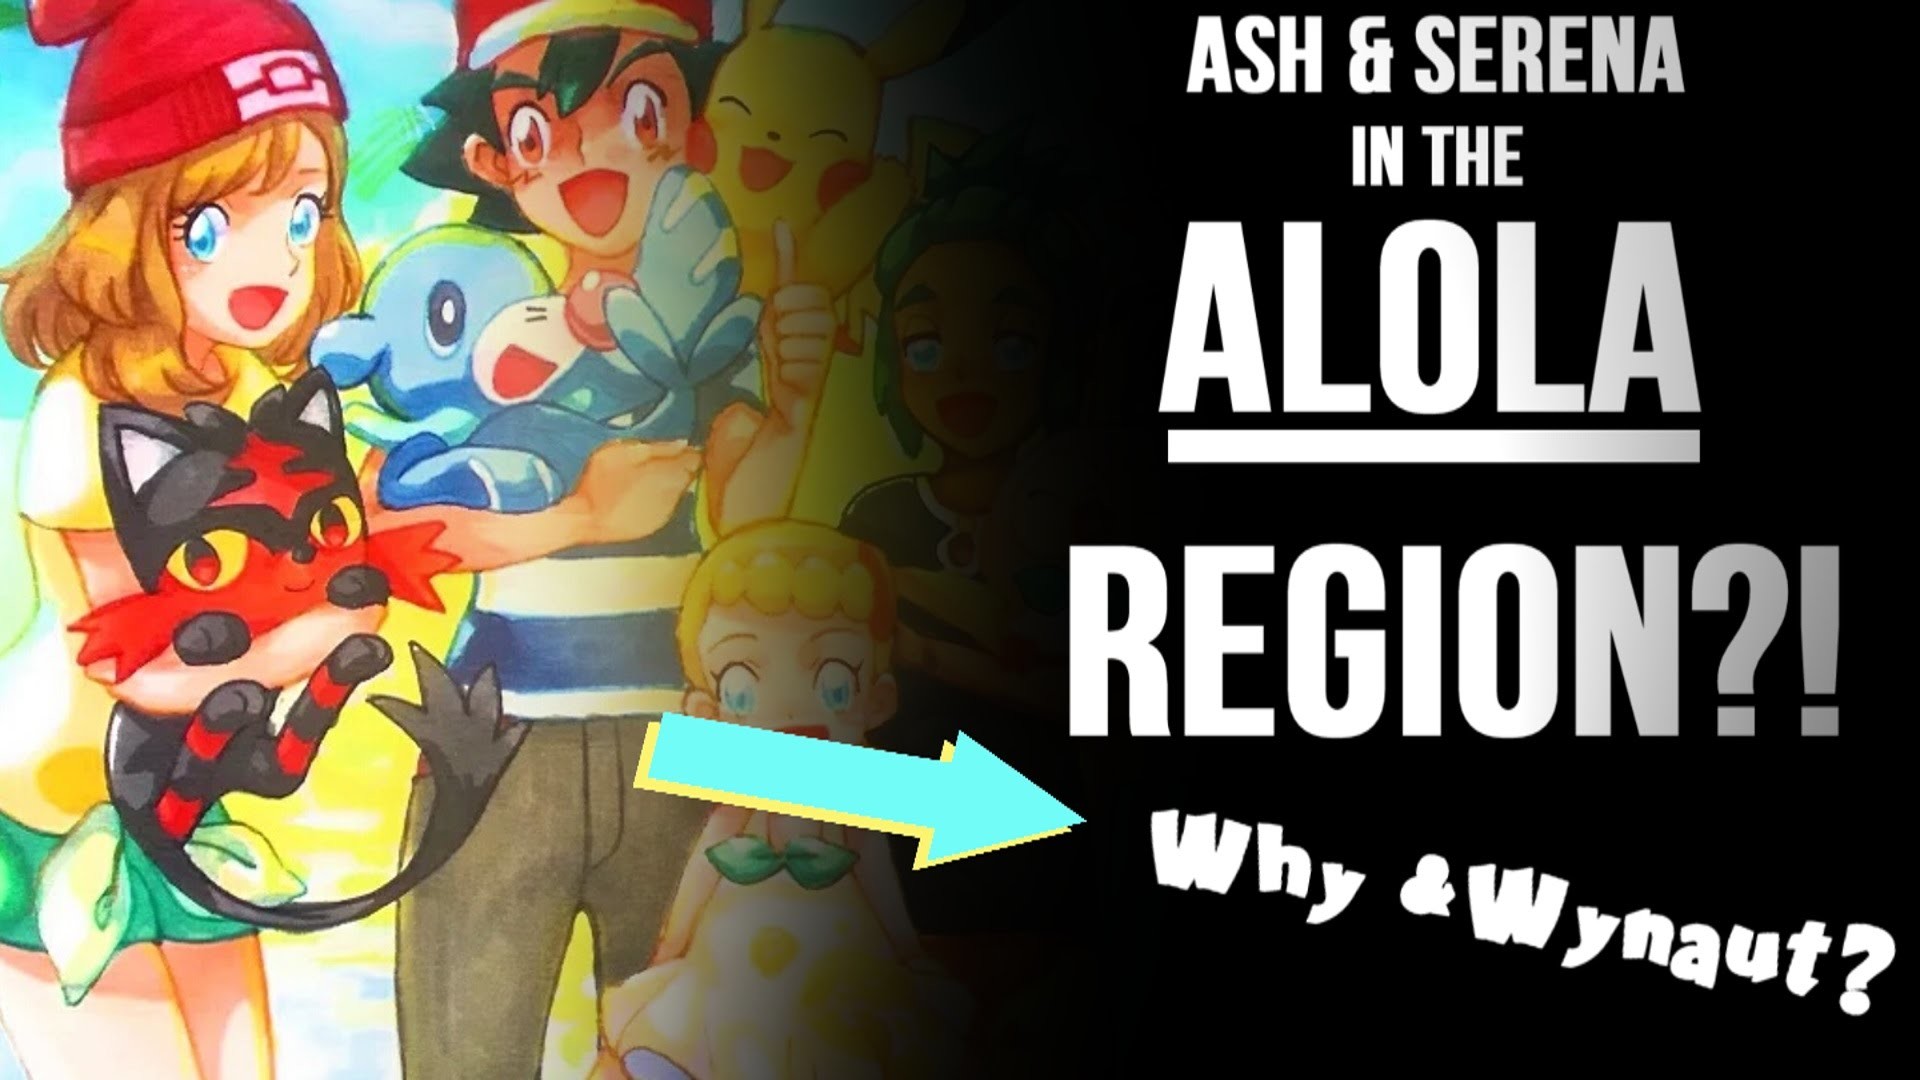 1920x1080 á¦â¥âªâ« Ash & Serena in ALOLA?! // Pokemon Sun & Moon Anime Amourshipping  Discussion/Theoryá¦â¥âªâ« - YouTube